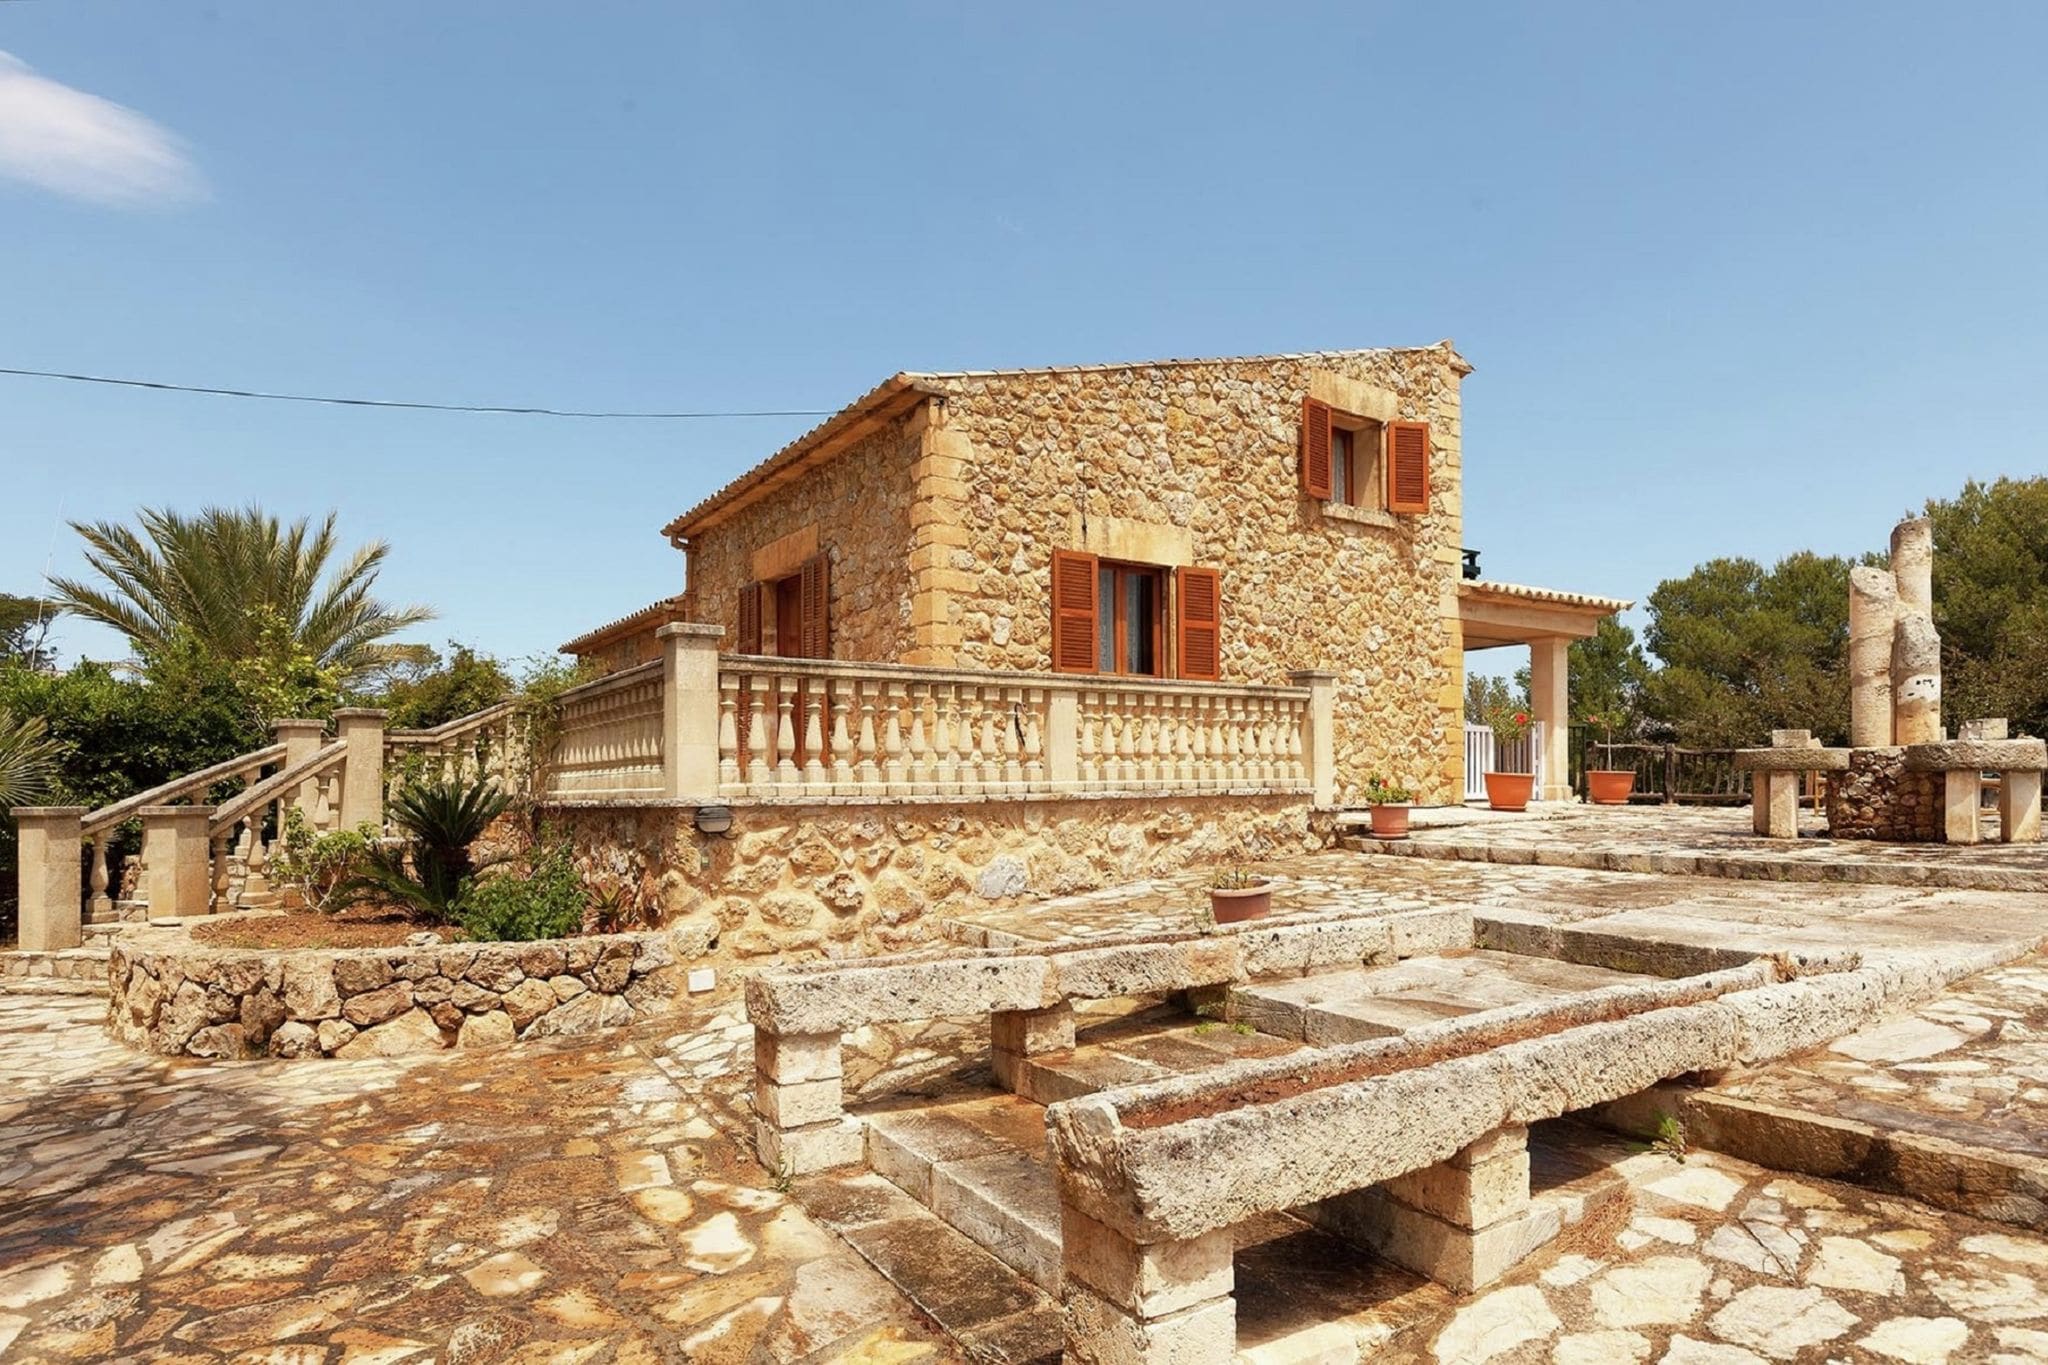 Grande et confortable maison de campagne en pierre près de la mer avec piscine privée